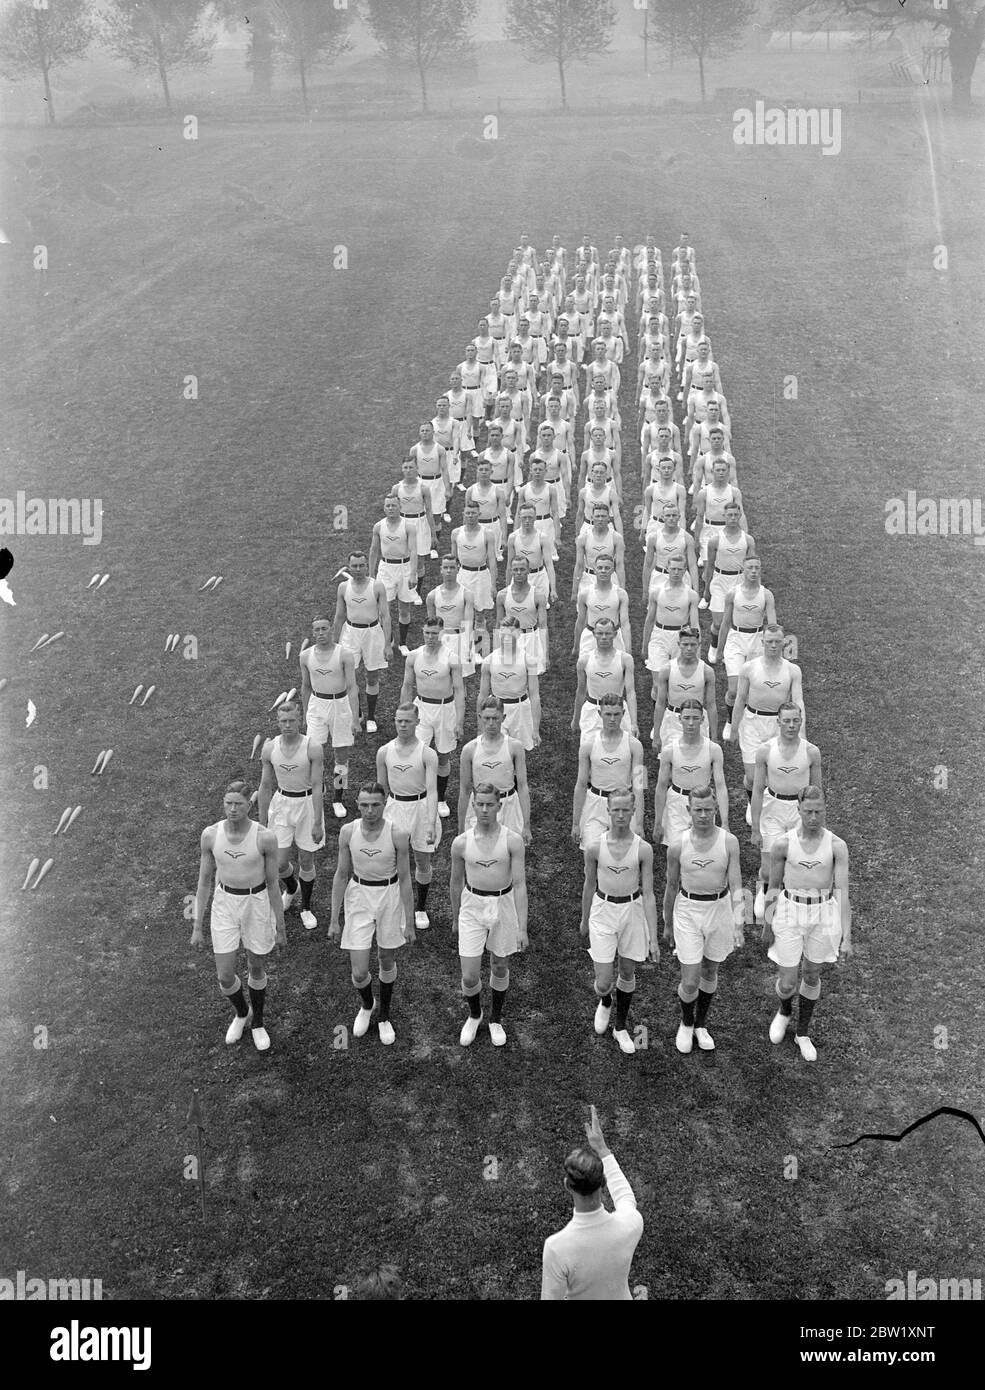 Les hommes de la RAF répètent pour le Royal Tournament. Les hommes de la Royal Air Force répètent au dépôt de la RAF d'Uxbridge pour leur performance au tournoi royal qui a ouvert ce mois-ci. Photos : les hommes de la RAF répètent à Uxbridge. 14 mai 1937 Banque D'Images